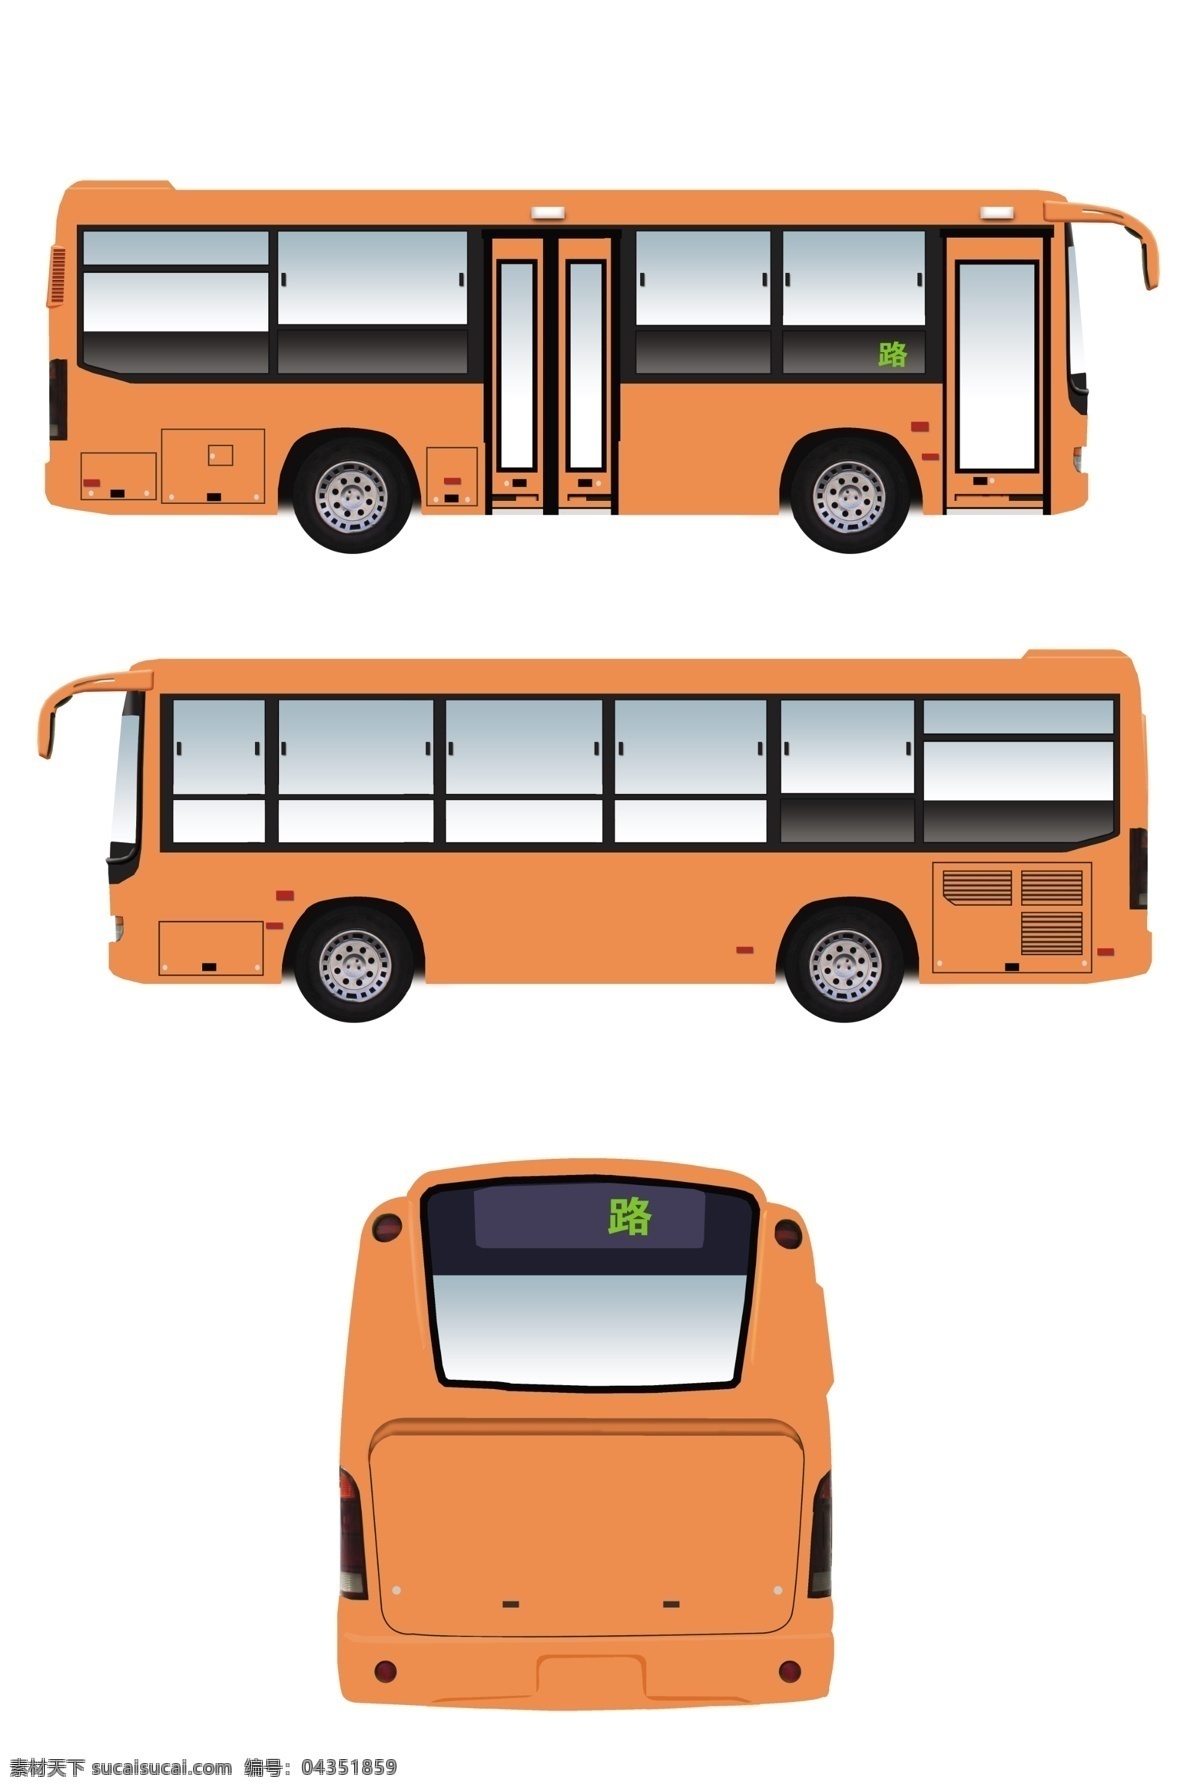 公交车体 公交车 卡通 卡通公交车 卡通动漫 巴士双层巴士 双层公交车 车体 车体广告 汽车 汽车模型